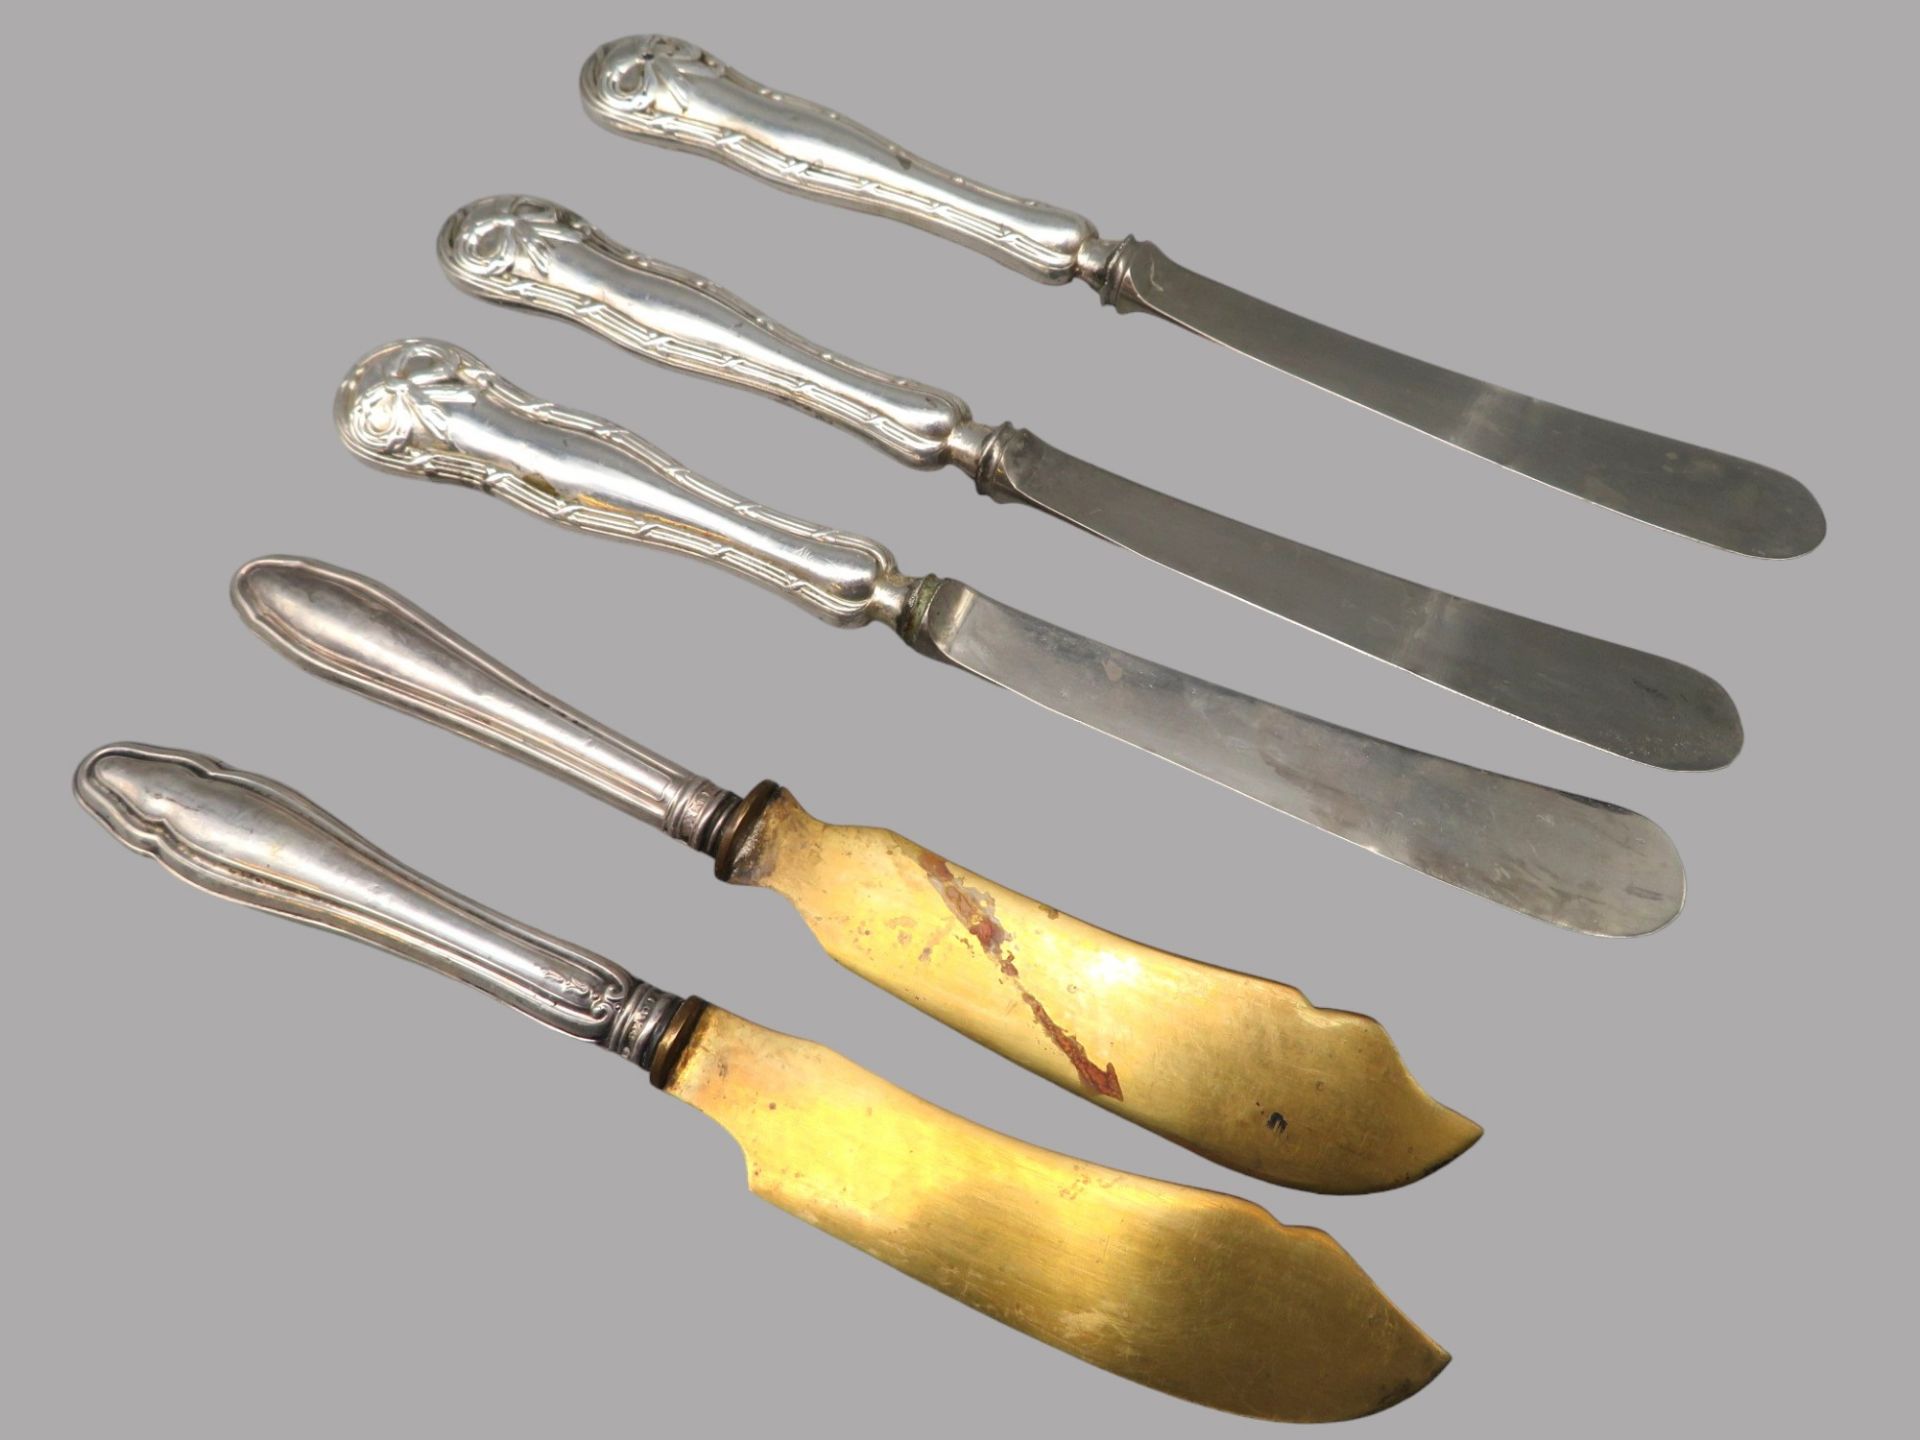 5 diverse Vorlege-Messer, 19. Jahrhundert, Griffe Silber 800/000, punziert, l 17 cm.